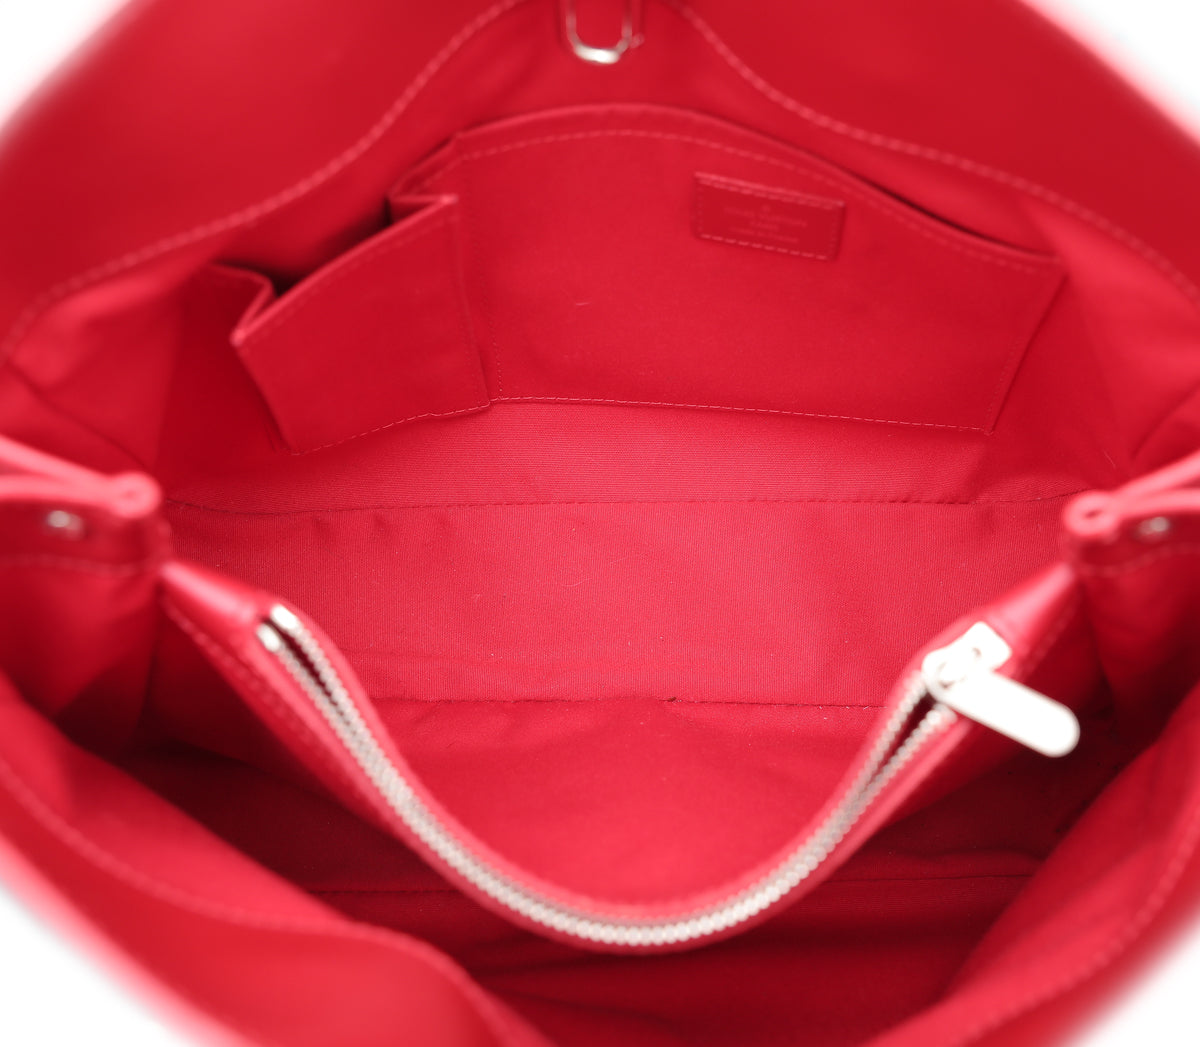 Louis Vuitton Cerise Passy PM Bag